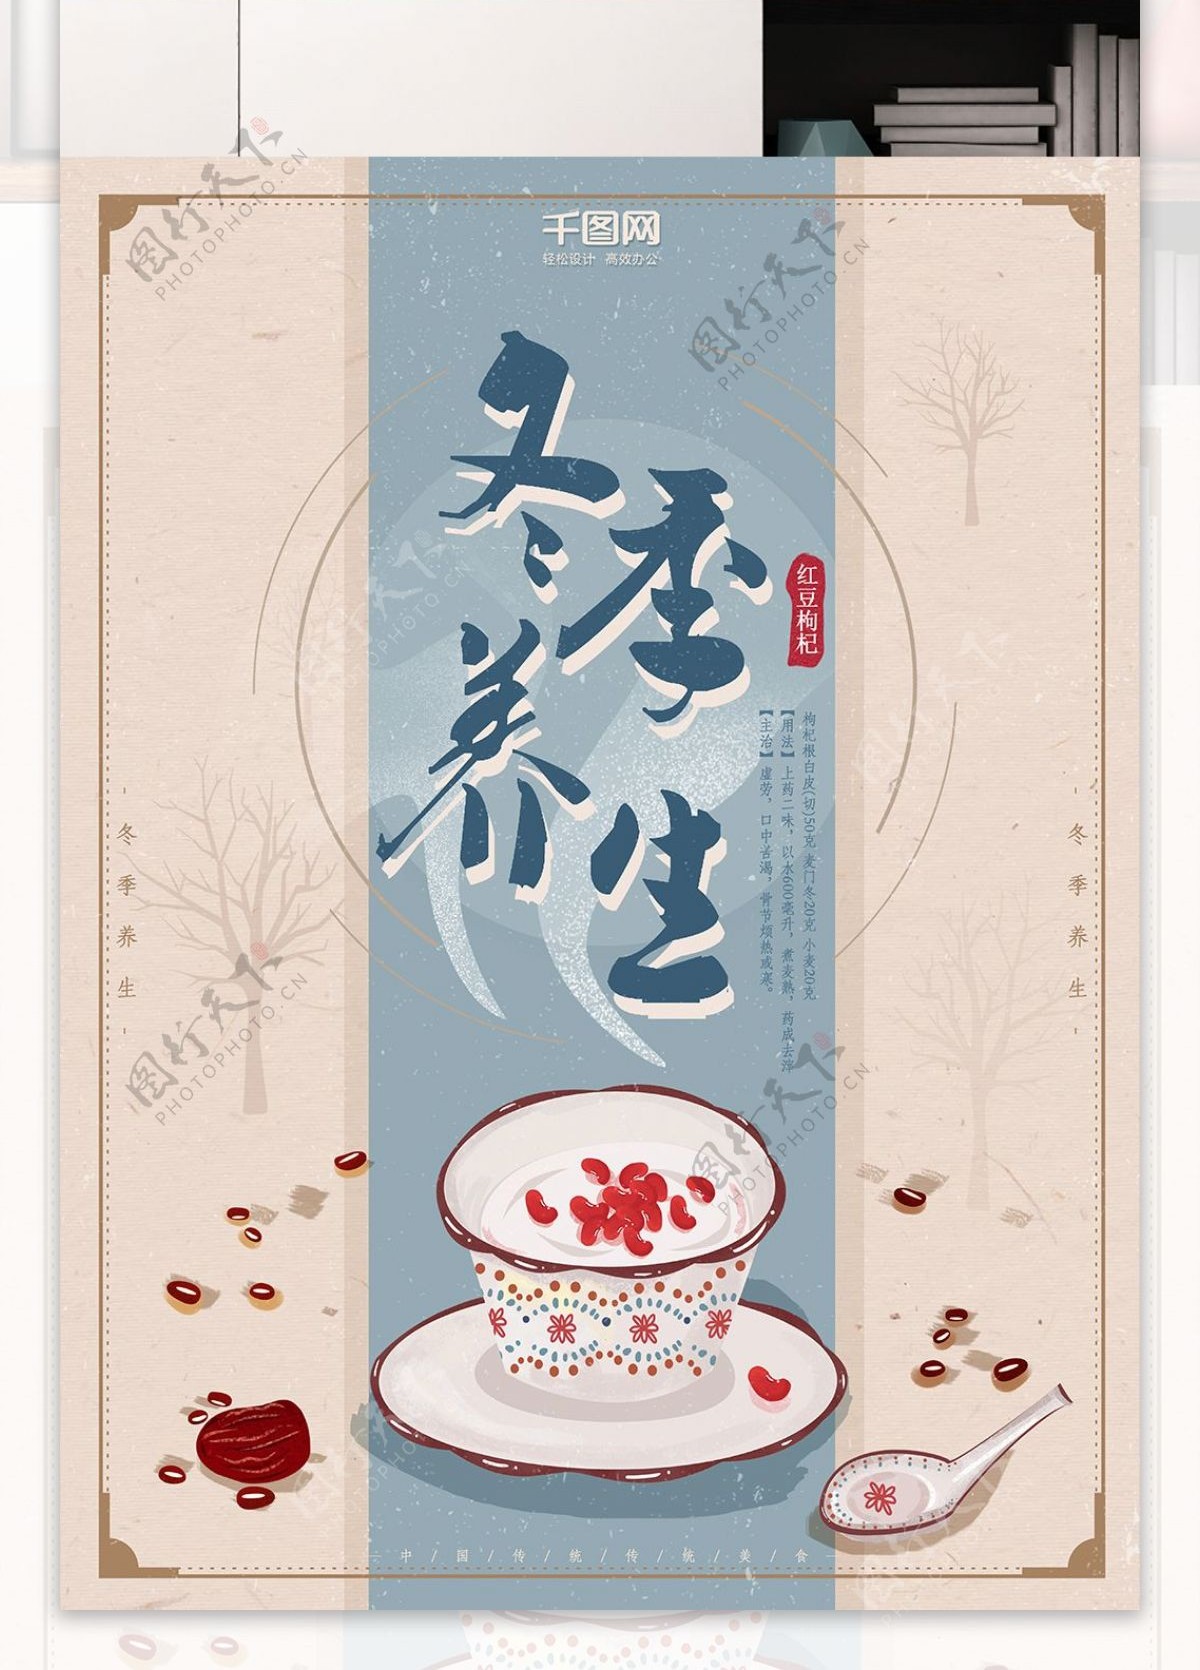 冬季养生海报枸杞红豆汤古典简约淡雅设计